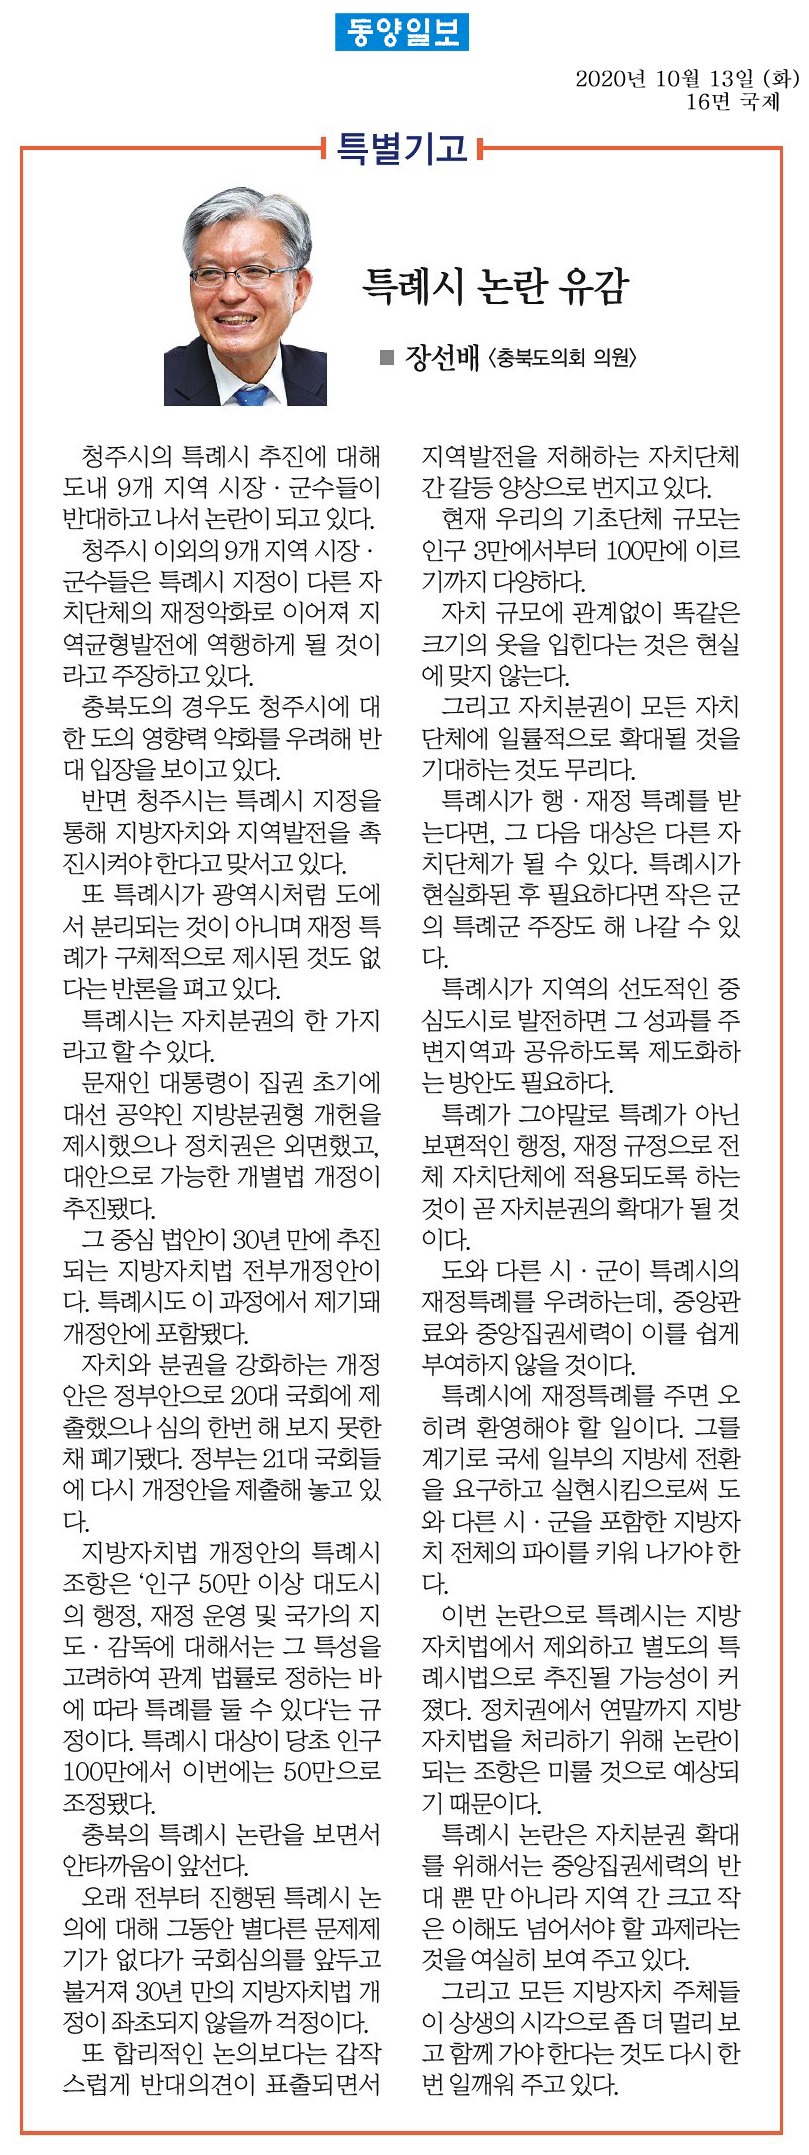 특례시 논란 유감_장선배의원(동양일보_201013) - 1